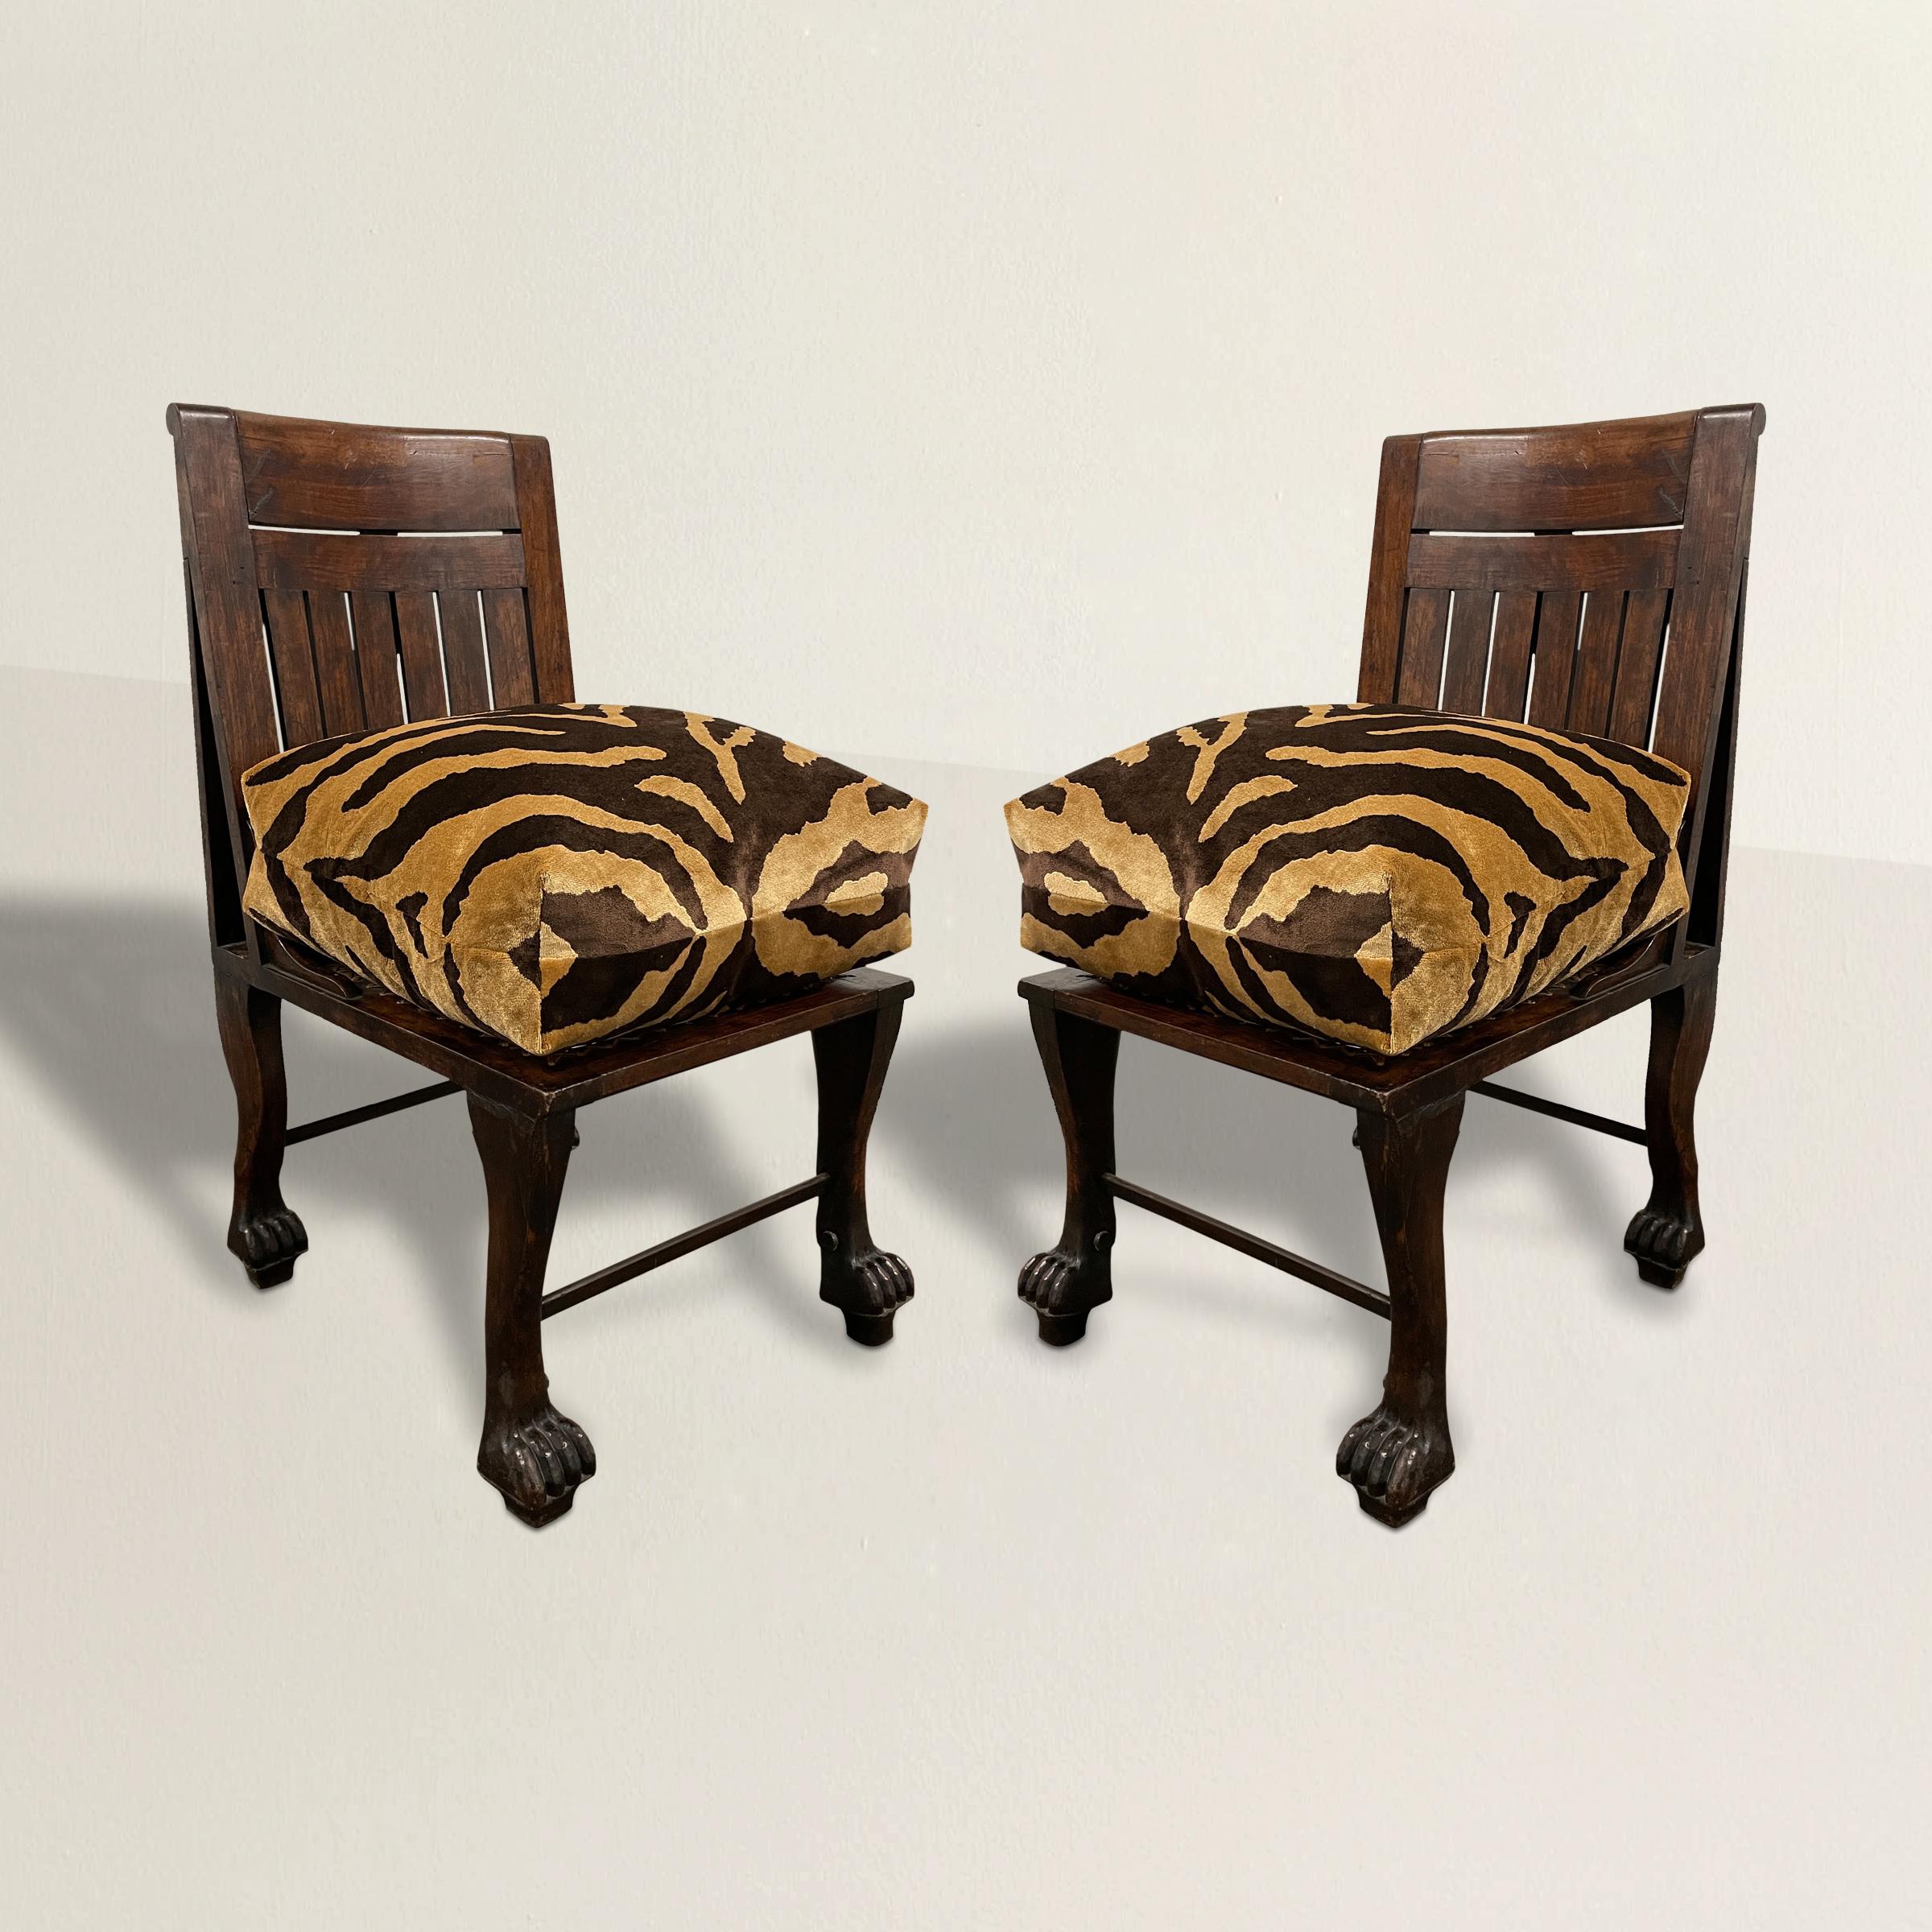 Ein unglaublich seltenes Paar englischer Pantoffelstühle aus dem frühen 20. Jahrhundert, inspiriert von einem ägyptischen Stuhl aus der 18. Dynastie, der 1905 entdeckt wurde. Die Rahmen sind aus Nussbaum geschnitzt und haben geschnitzte Beine, die